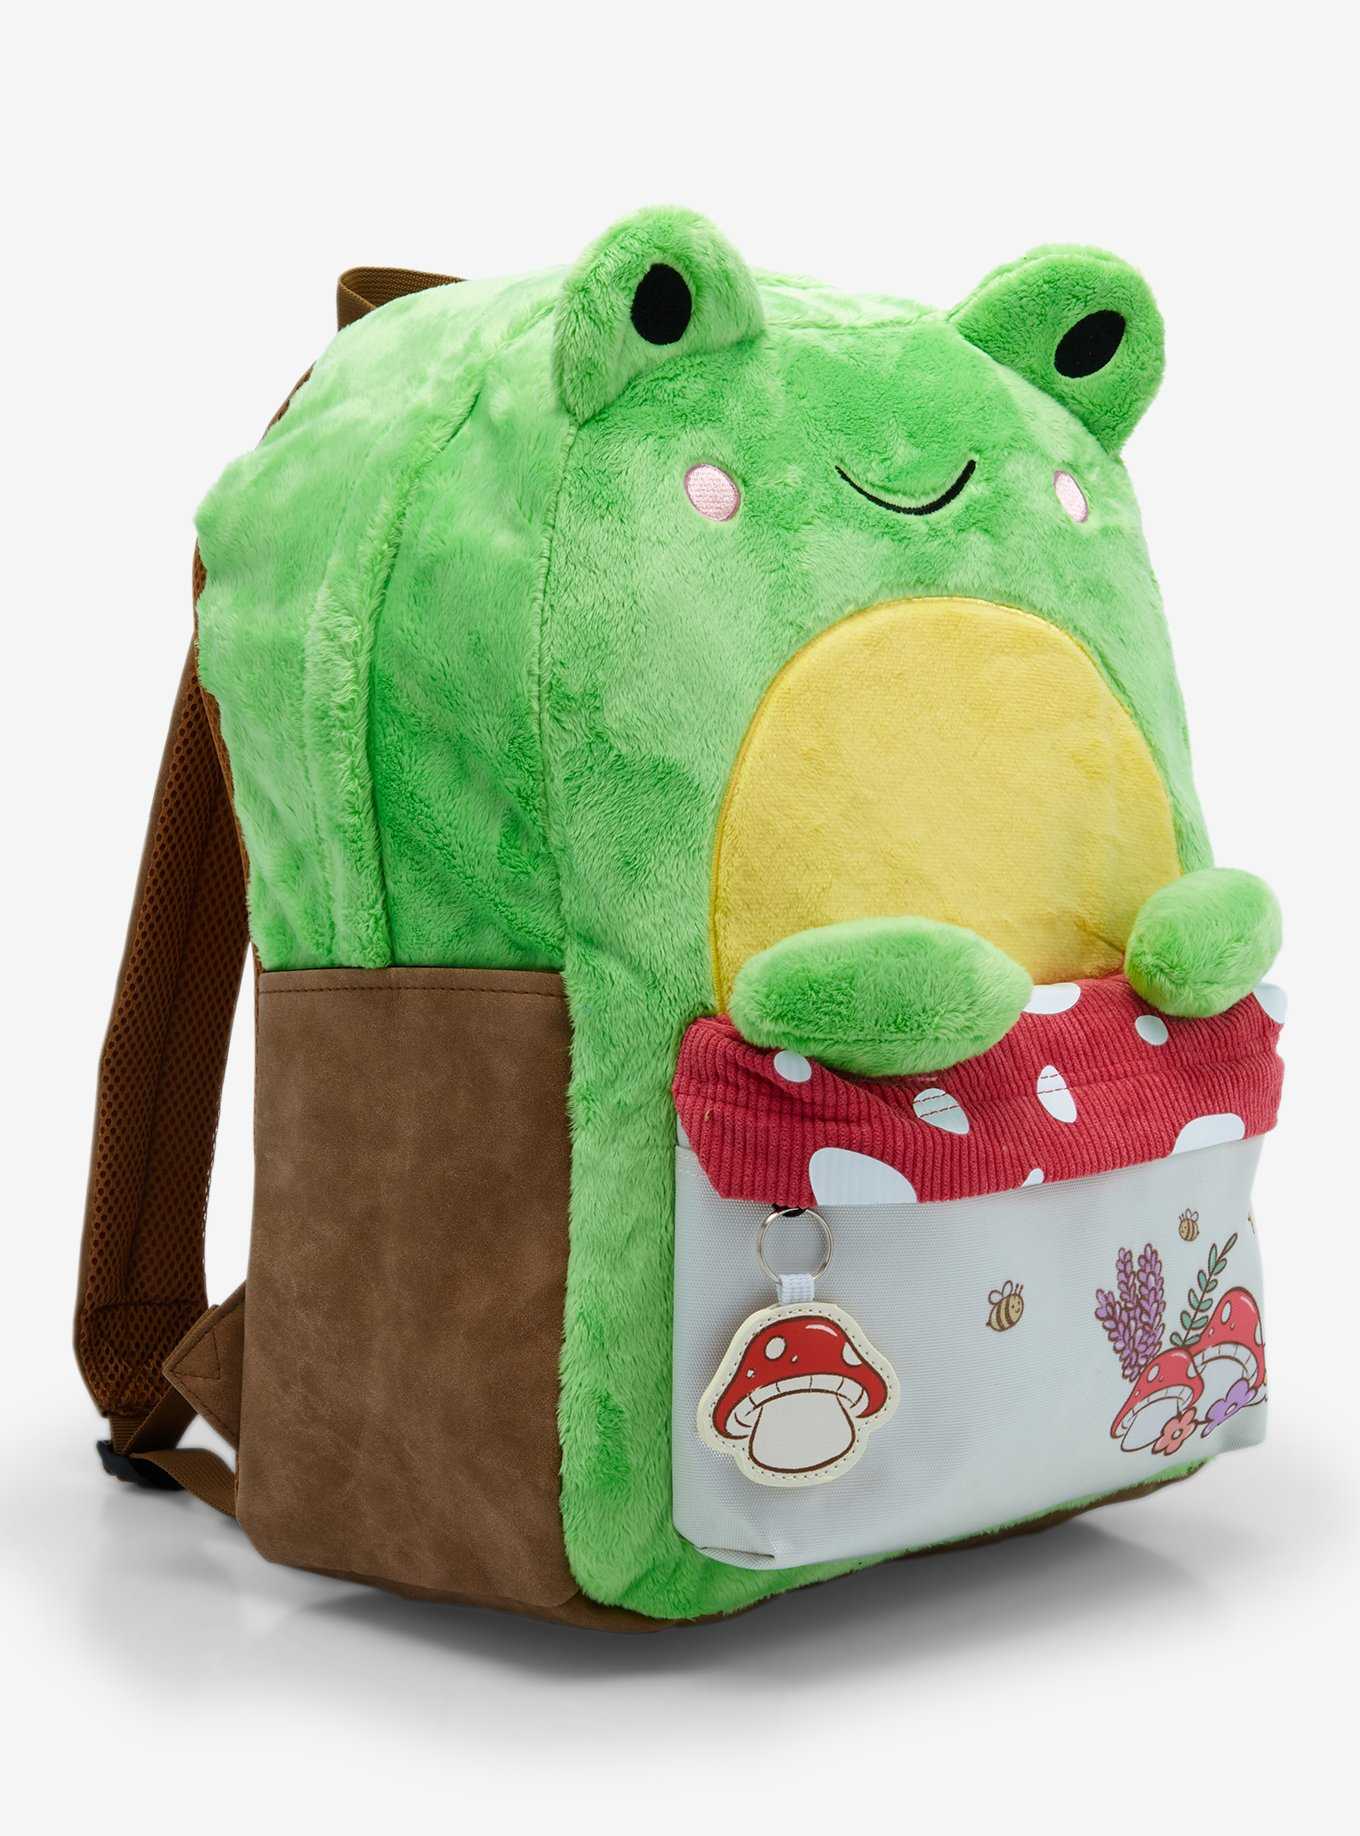 Frog Mushroom Fuzzy Figural Backpack, , hi-res